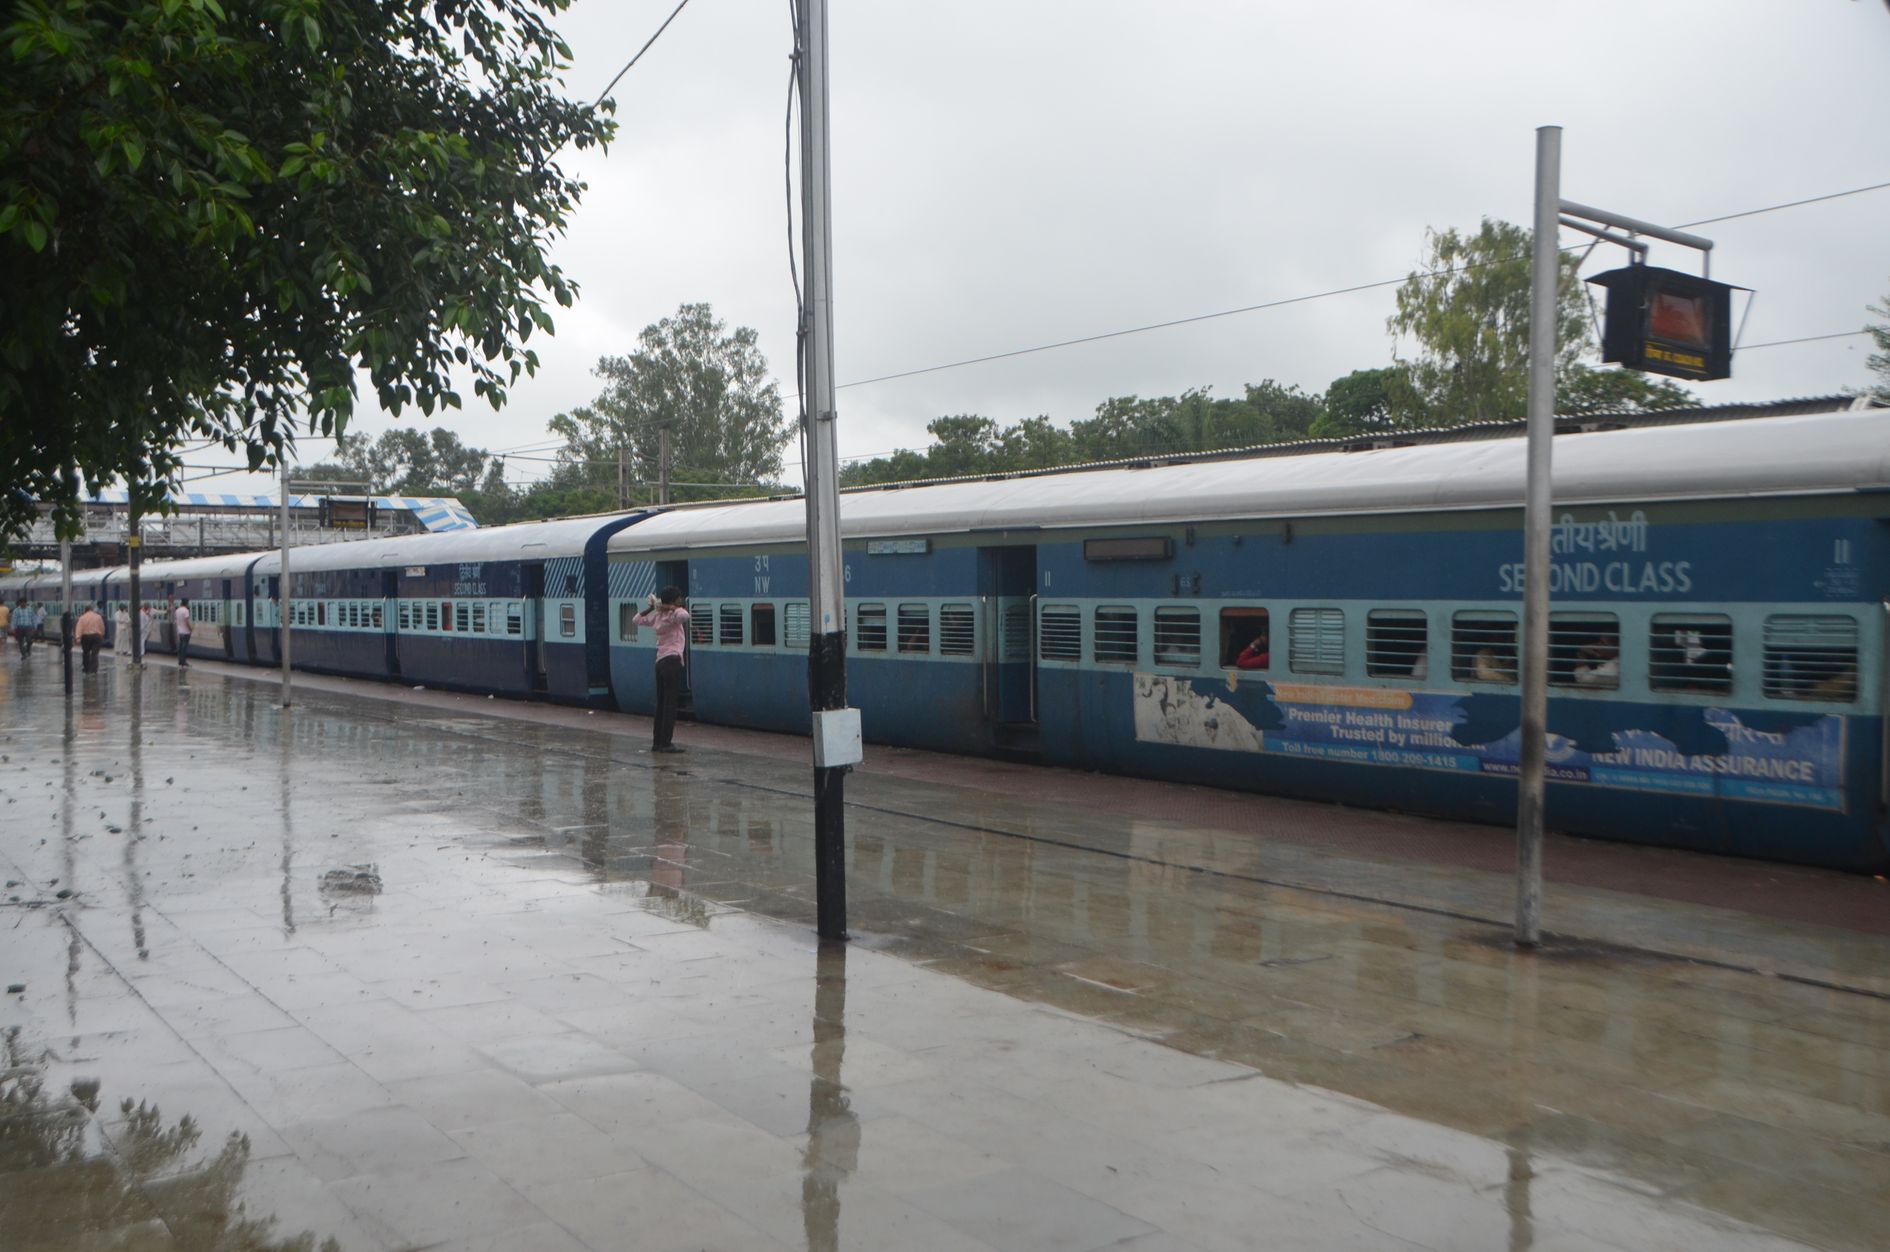 दिल्ली-मुंबई रेल मार्ग बाधित: बारिश ने रोकी ट्रेनों की रफ्तार, दो ट्रेन निरस्त